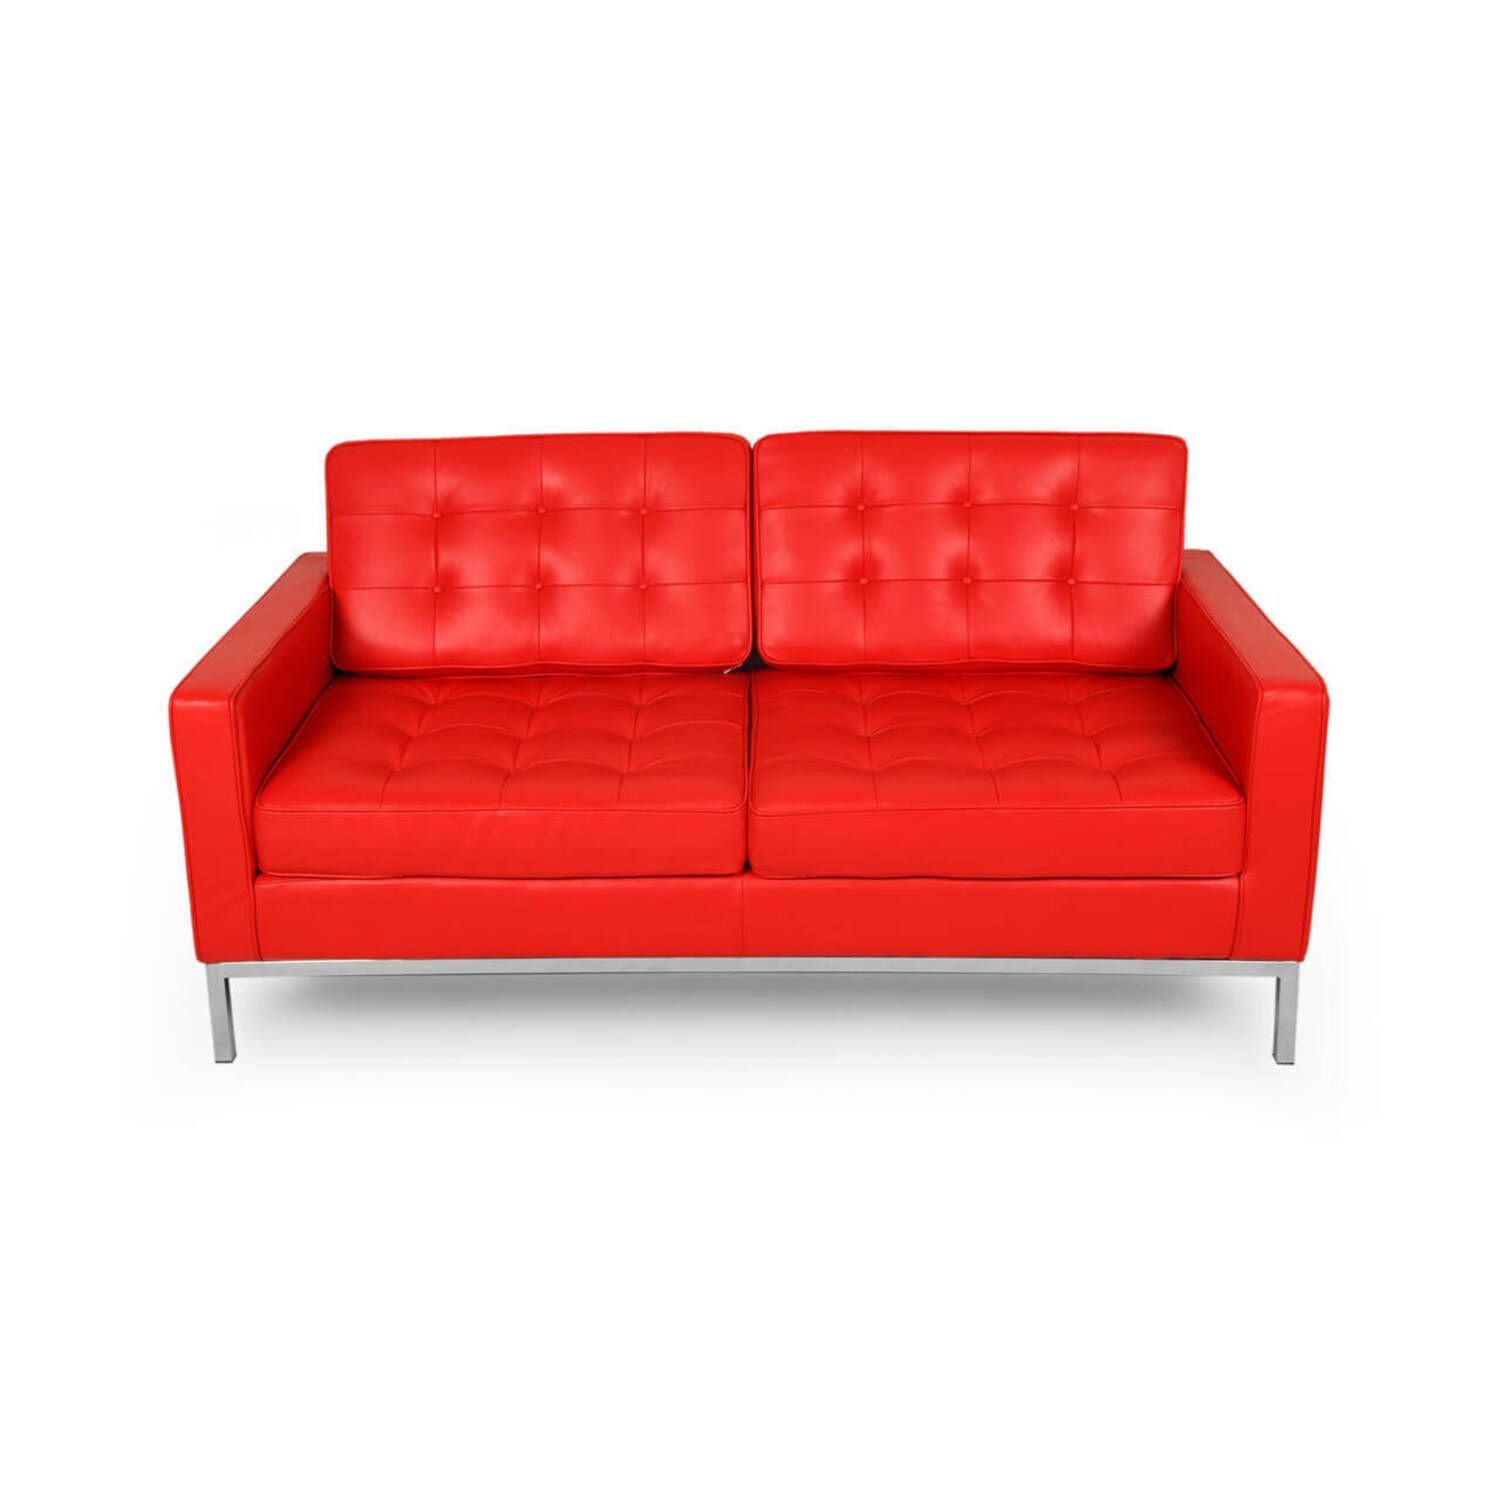 Красный кожаный двухместный диван Florence купить